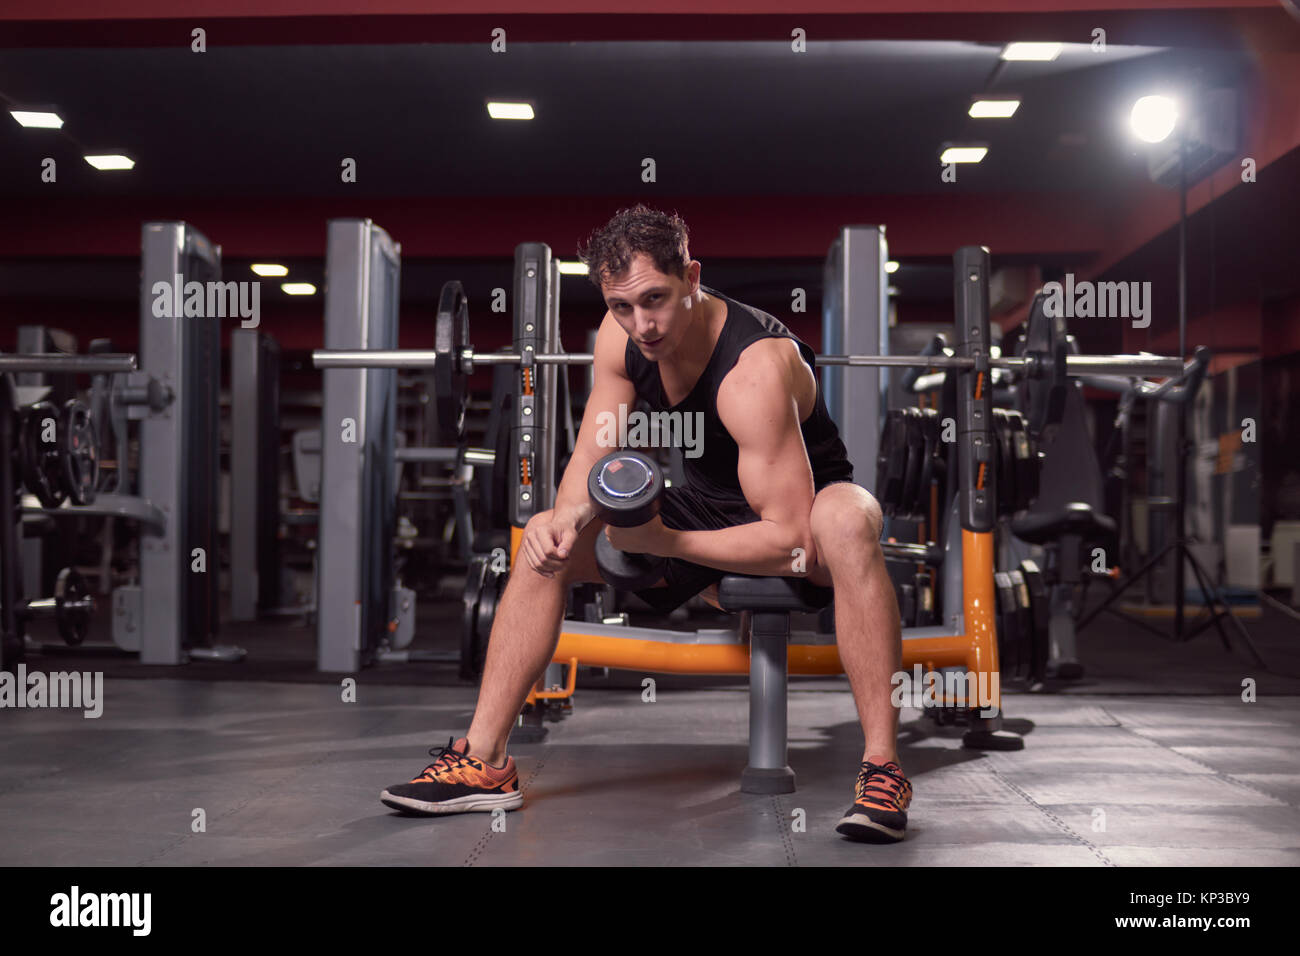 Un hombre joven, gimnasio oscuro en interiores, equipos de gimnasia, una mano pesa bíceps ejercicio, banco para sentarse, mirando a la cámara. Foto de stock